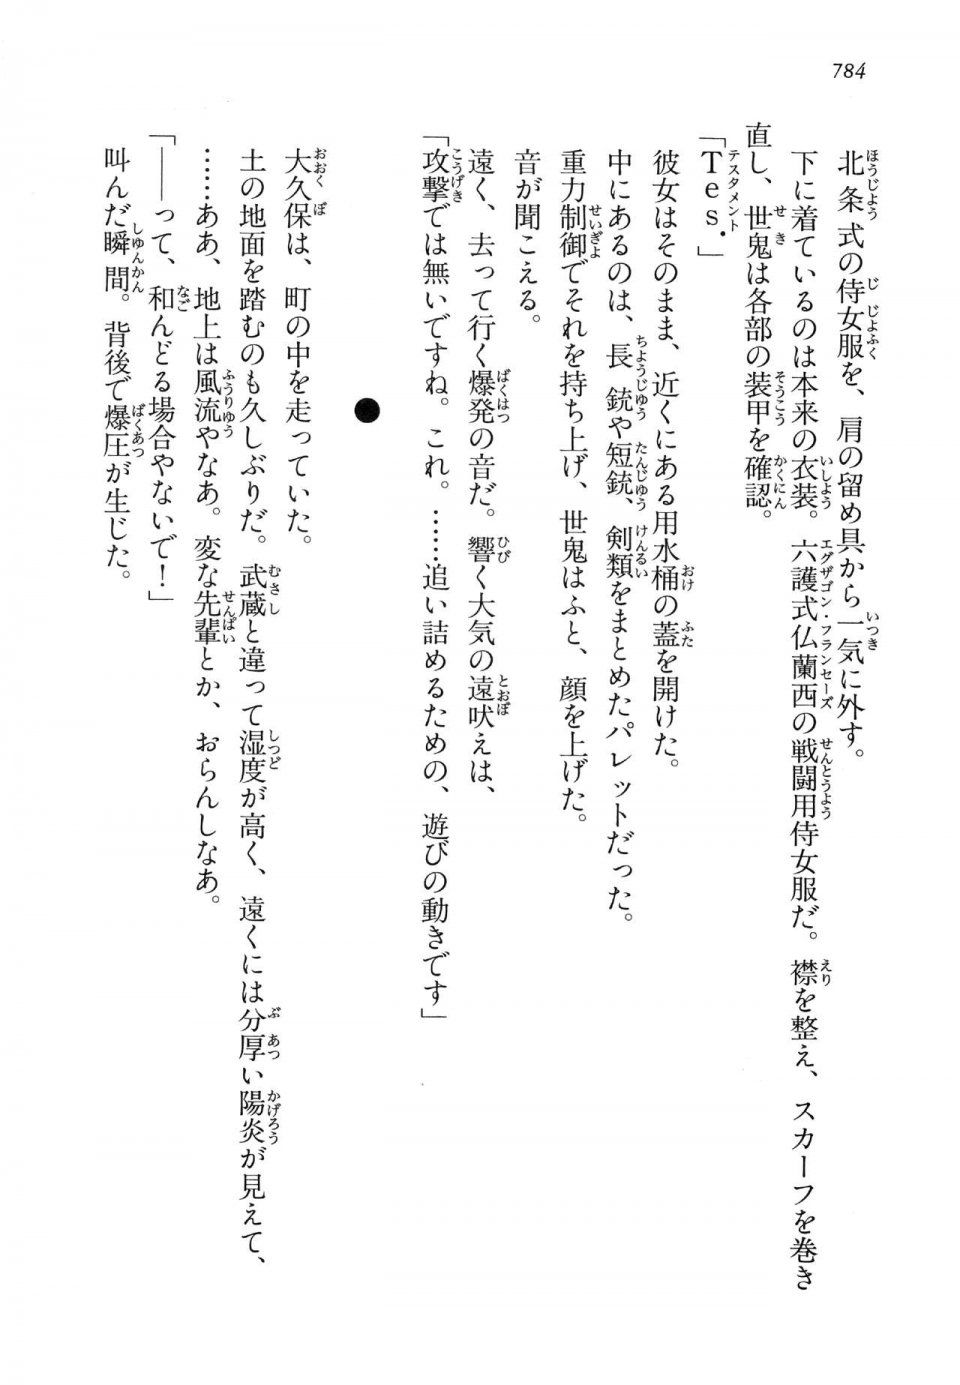 Kyoukai Senjou no Horizon LN Vol 14(6B) - Photo #784